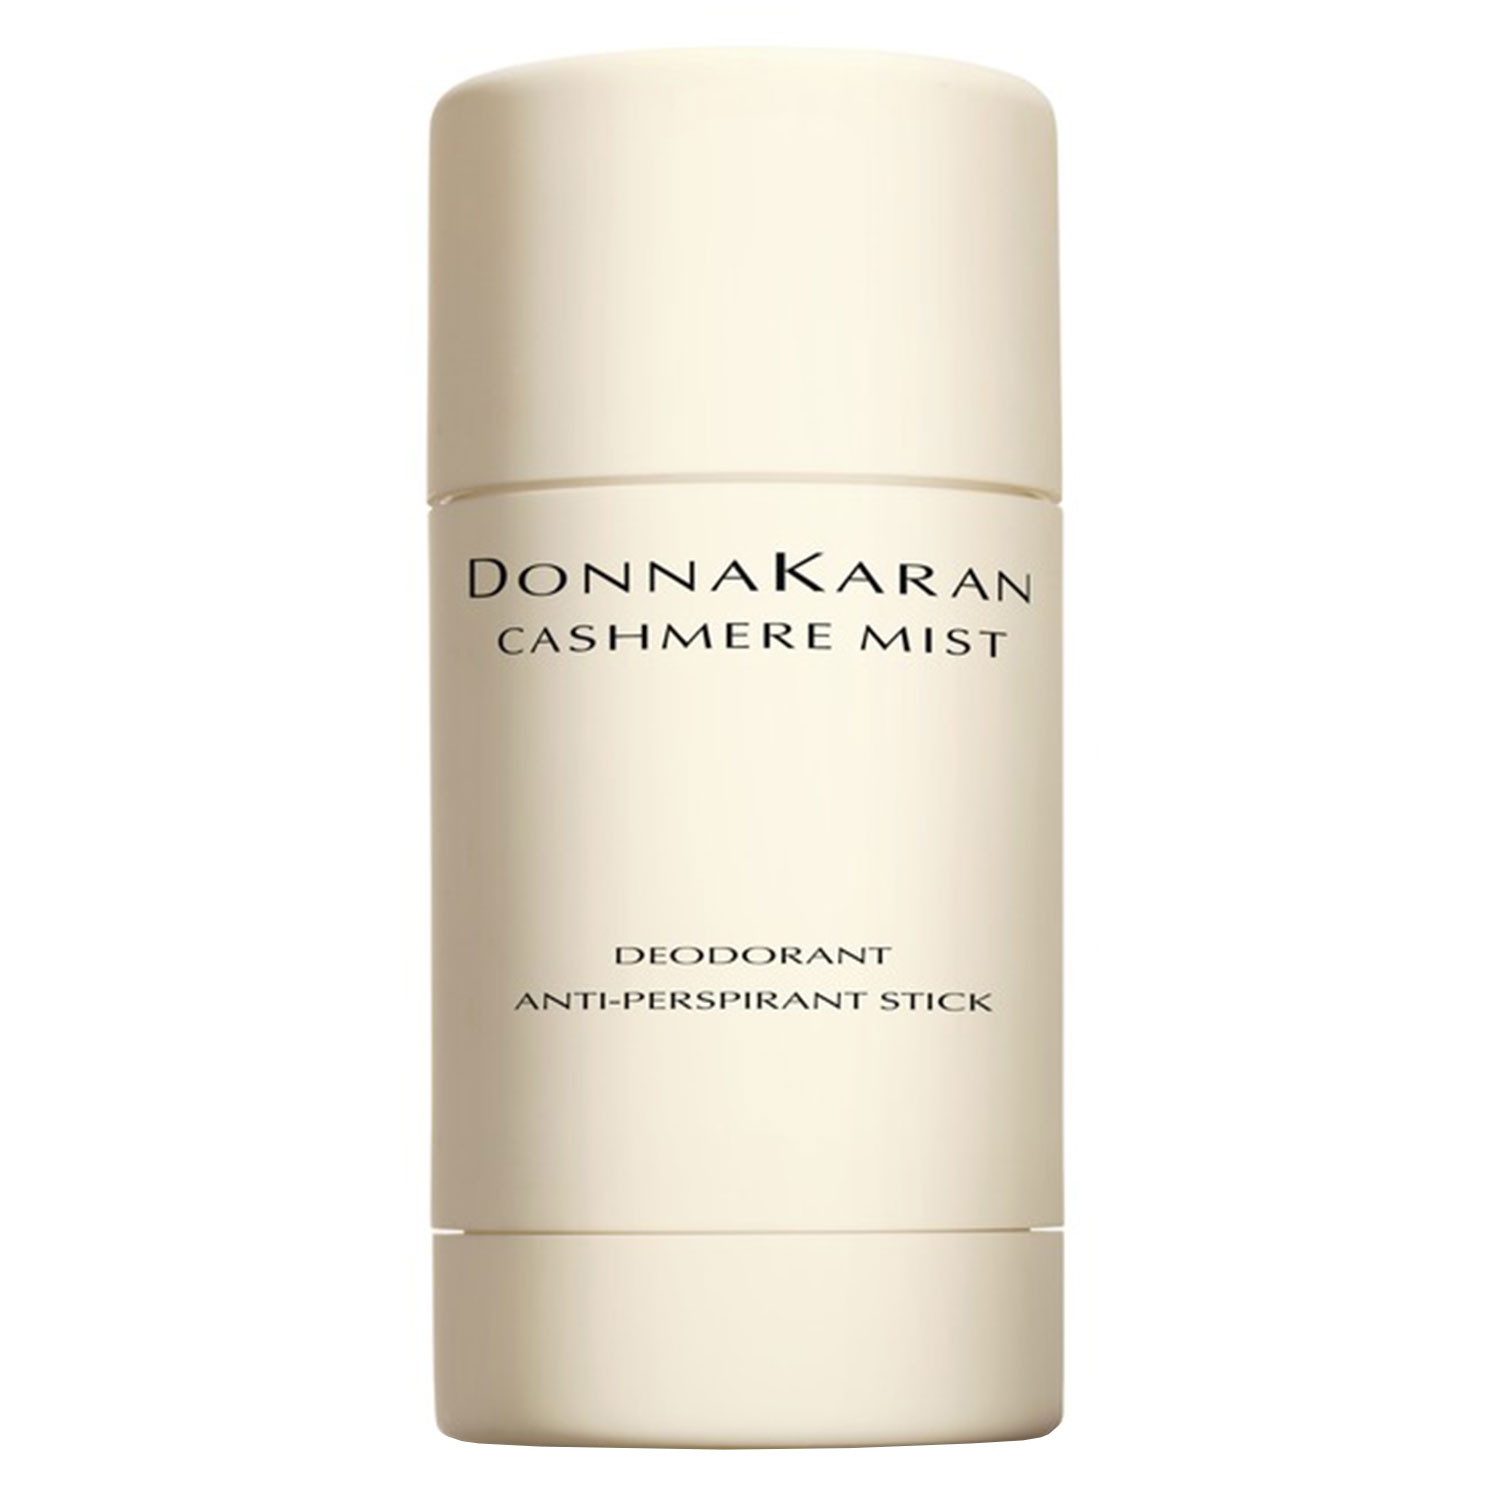 Produktbild von DK Cashmere Mist - Deodorant Antiperspirant Stick